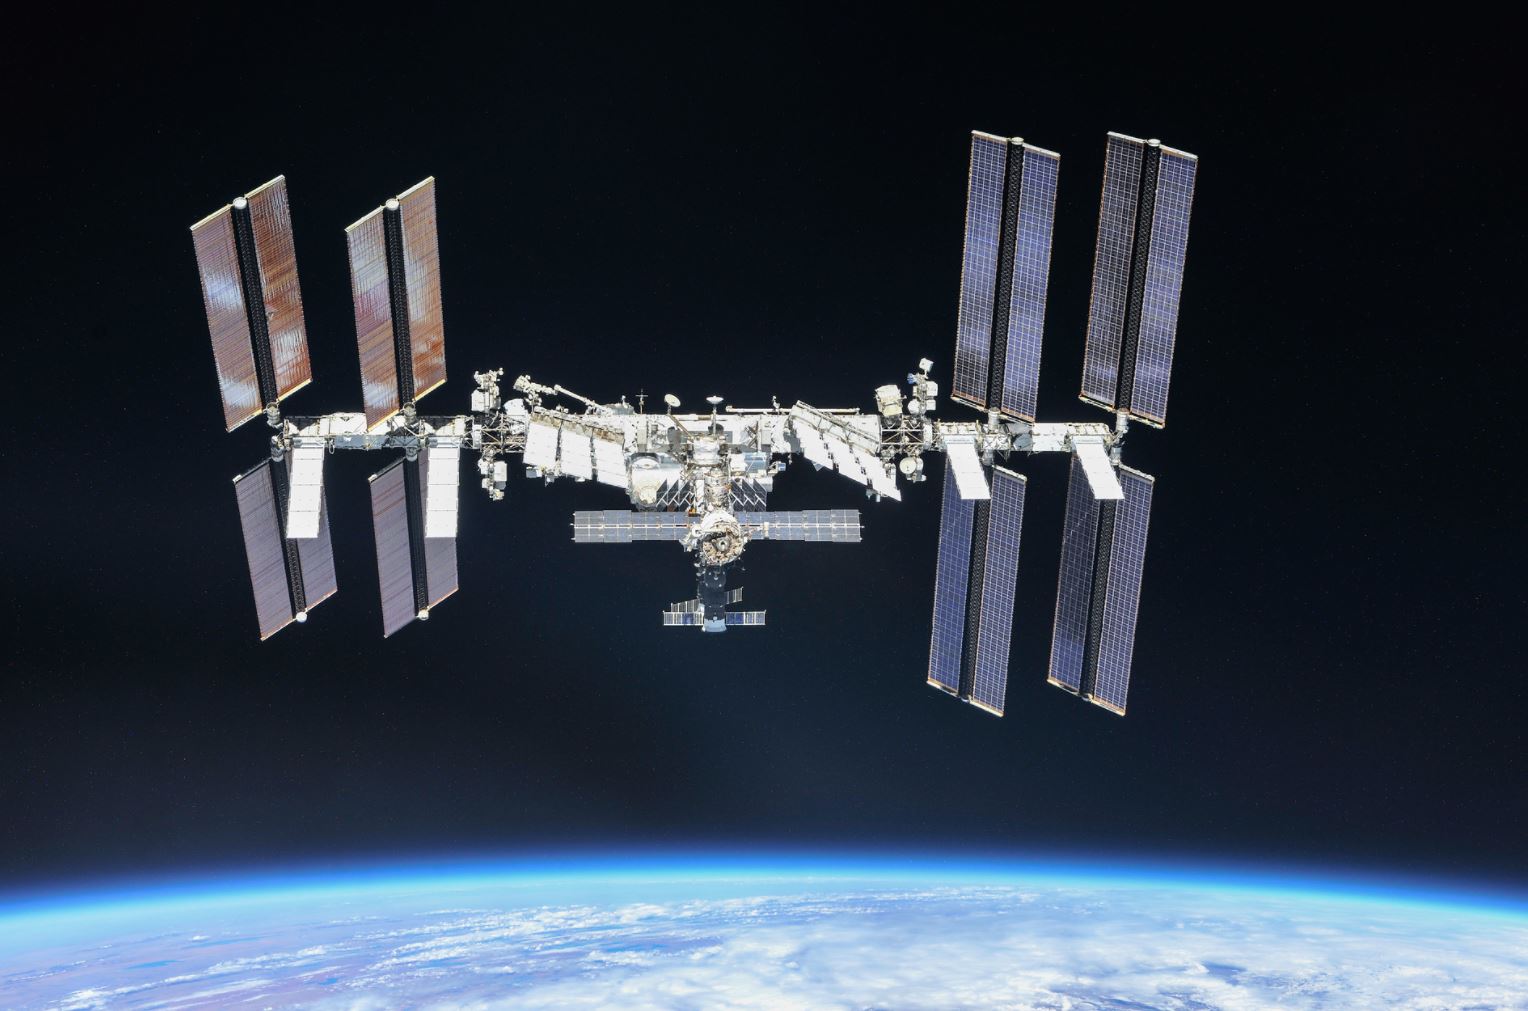 धरती पर यहां बनेगी अंतरराष्ट्रीय स्पेस स्टेशन की &#039;कब्र&#039;, समय-जगह तय